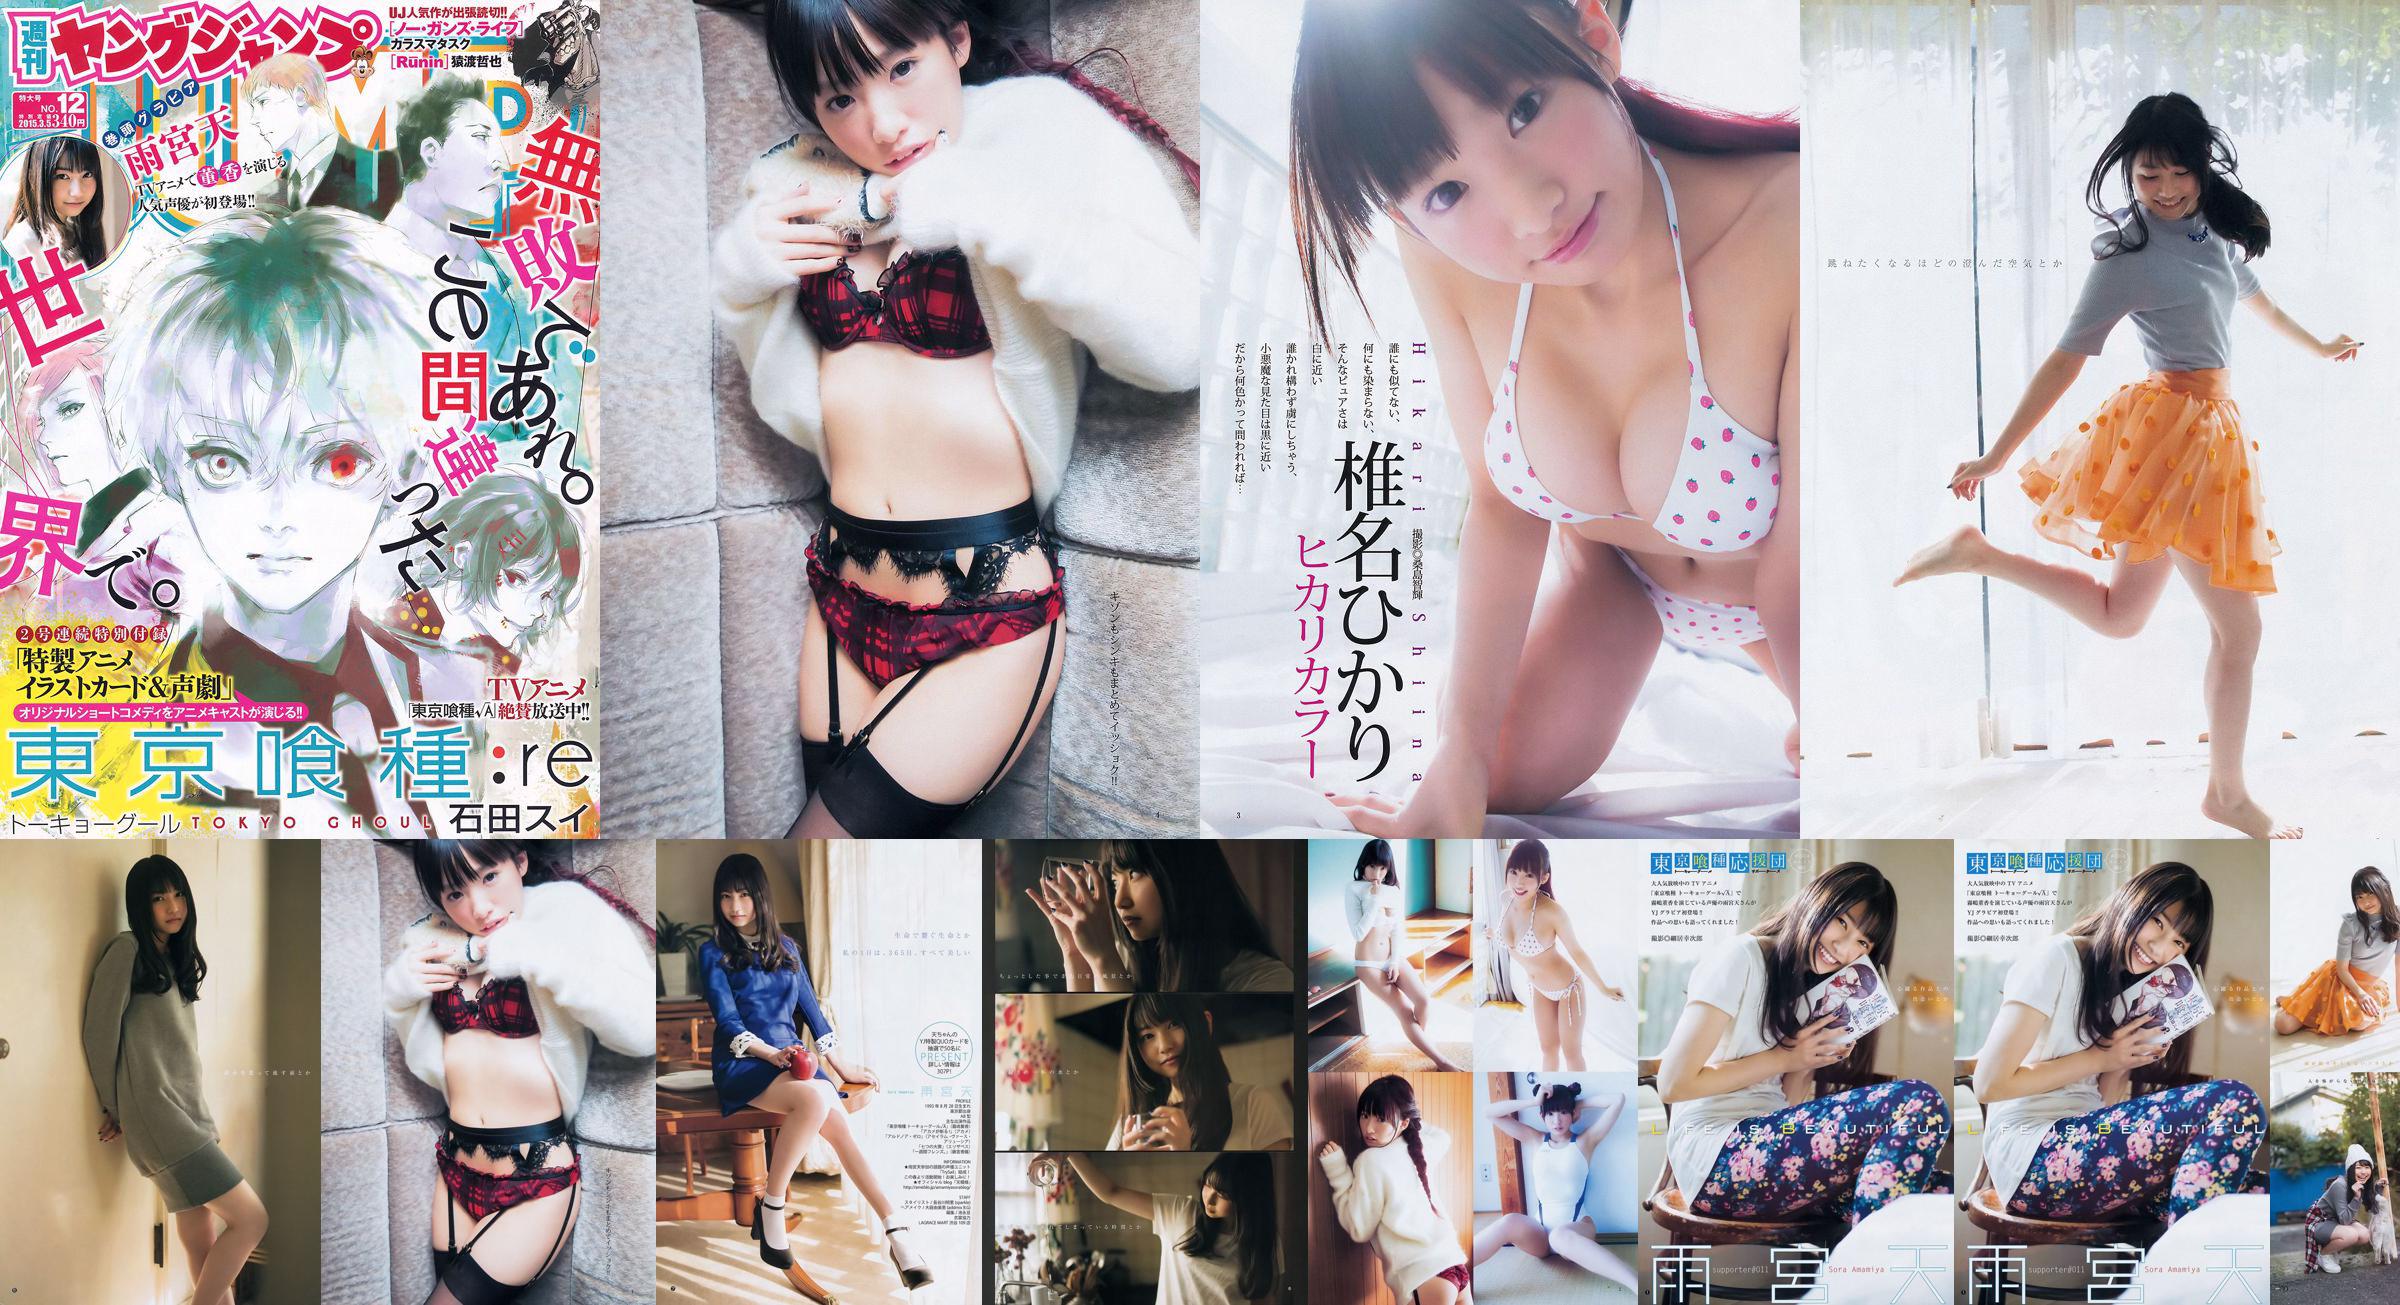 Amamiya Tian Shiina ひかり [Weekly Young Jump] 2015 No.12 Photo Magazine No.c20a1c Página 3